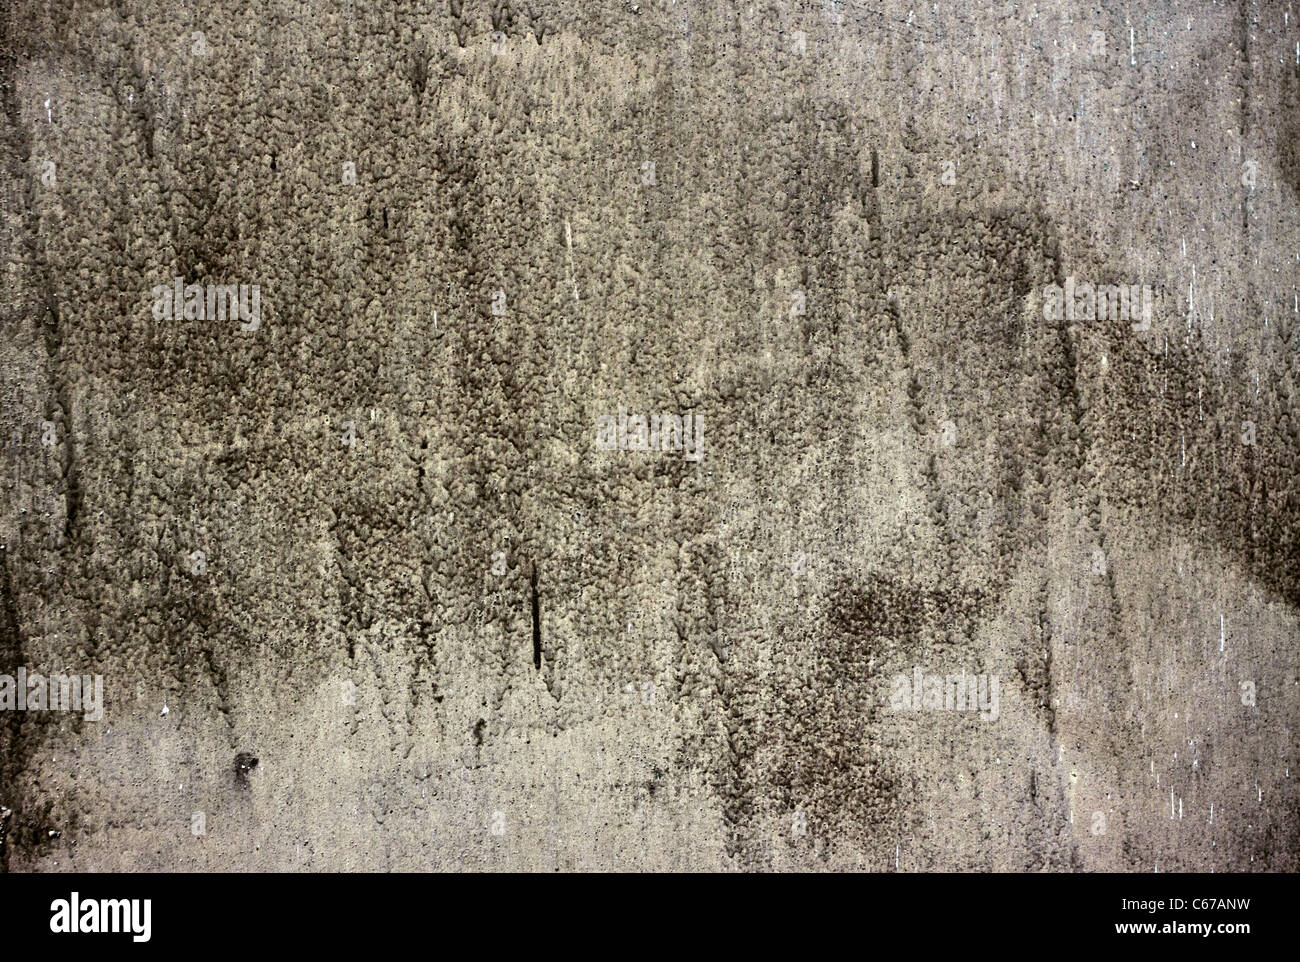 gray concrete wall texture horizontal orientation background Stock Photo